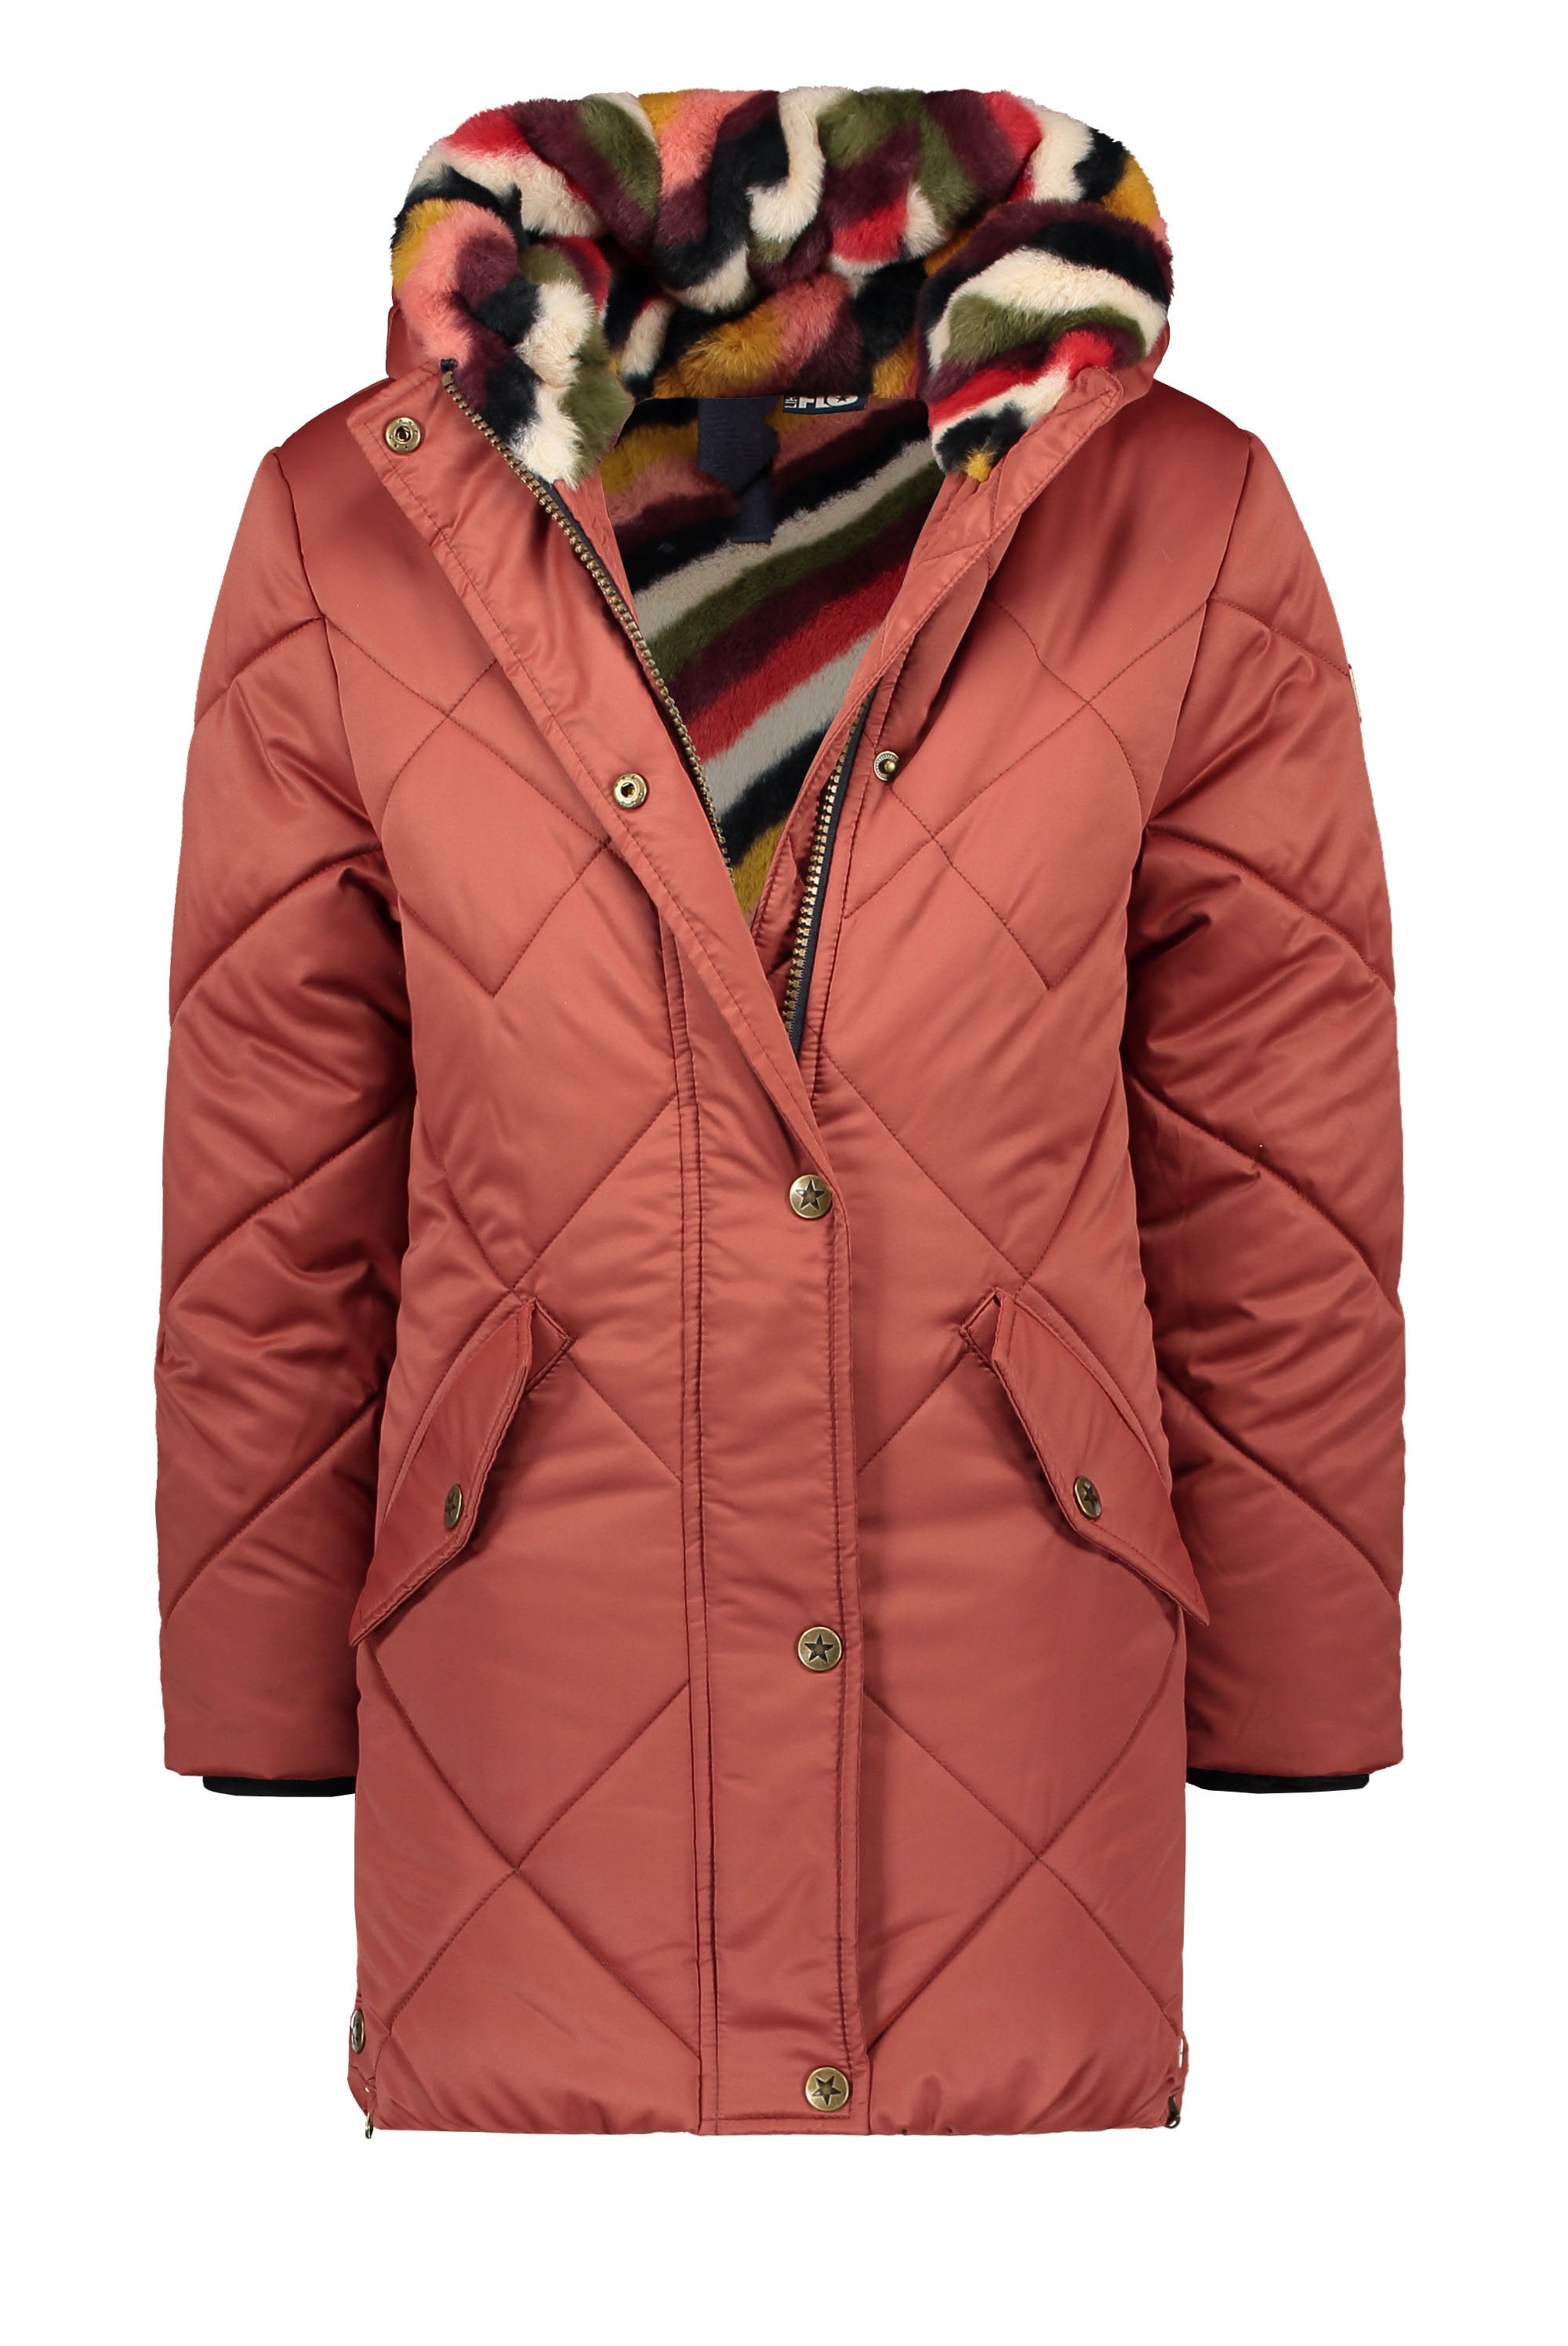 Meisjes Flo girls long hooded jacket, check quilting van Flo in de kleur Rust in maat 152.